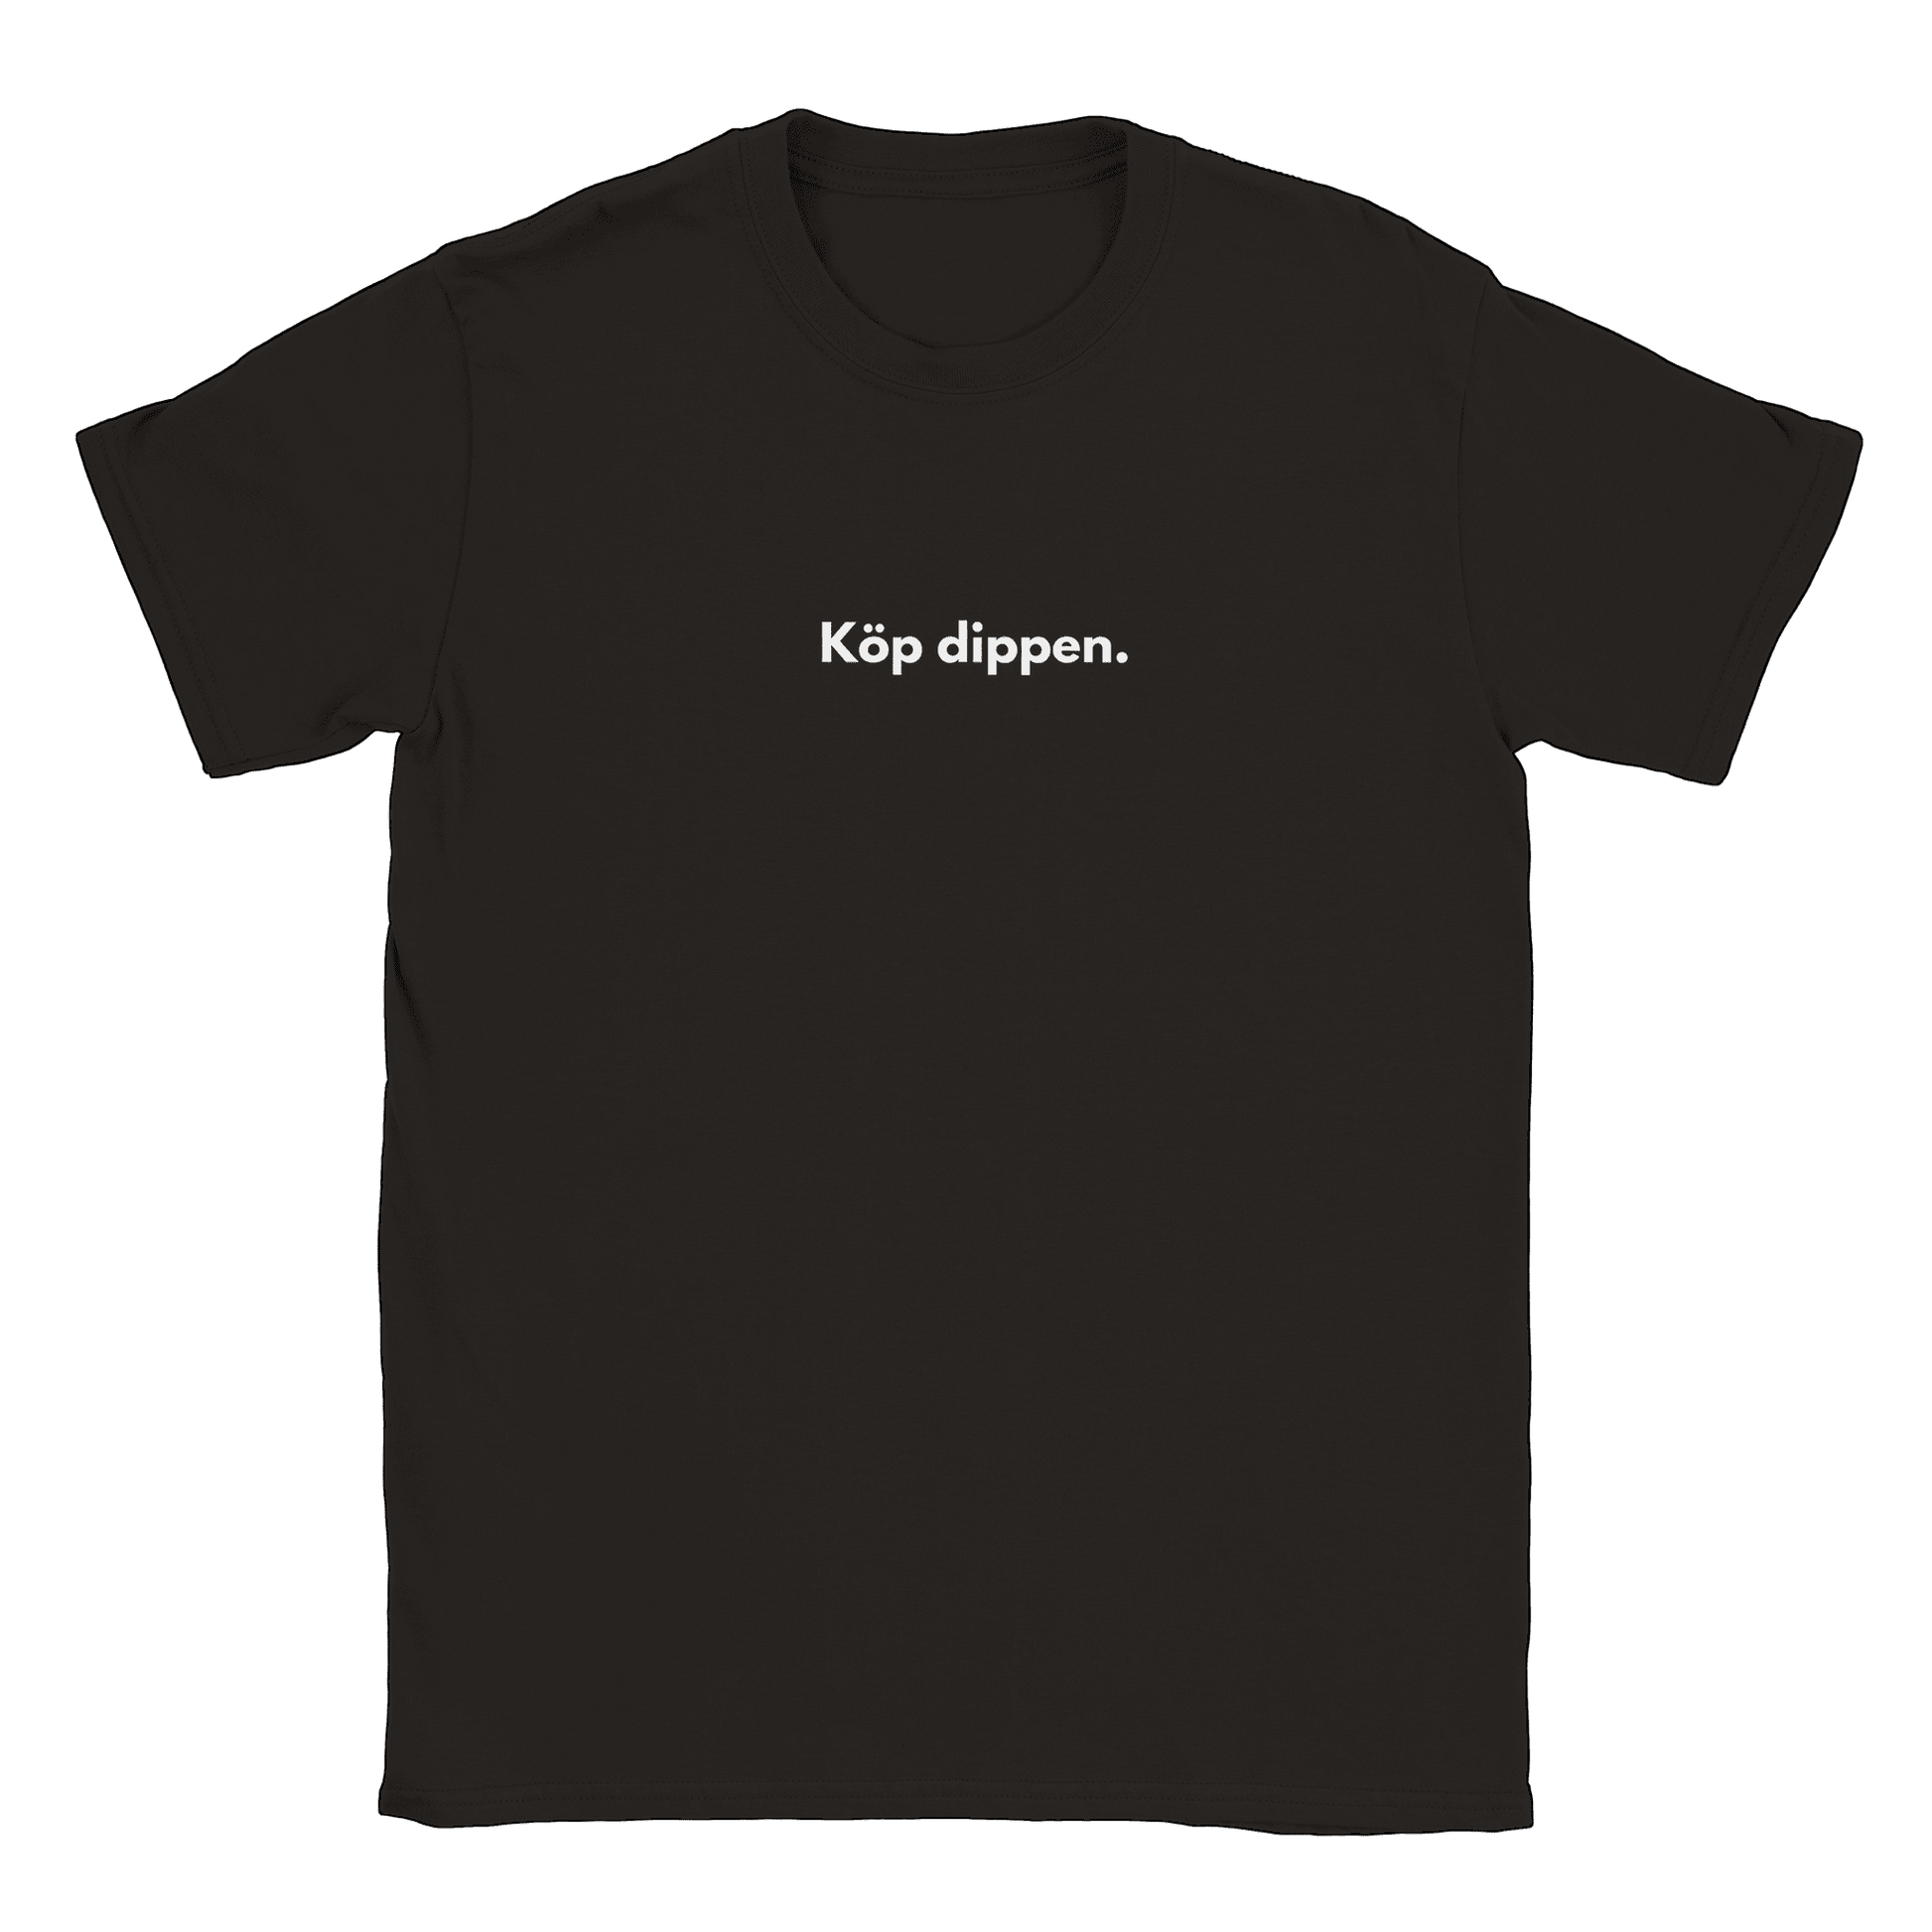 Köp dippen - T-shirt Svart